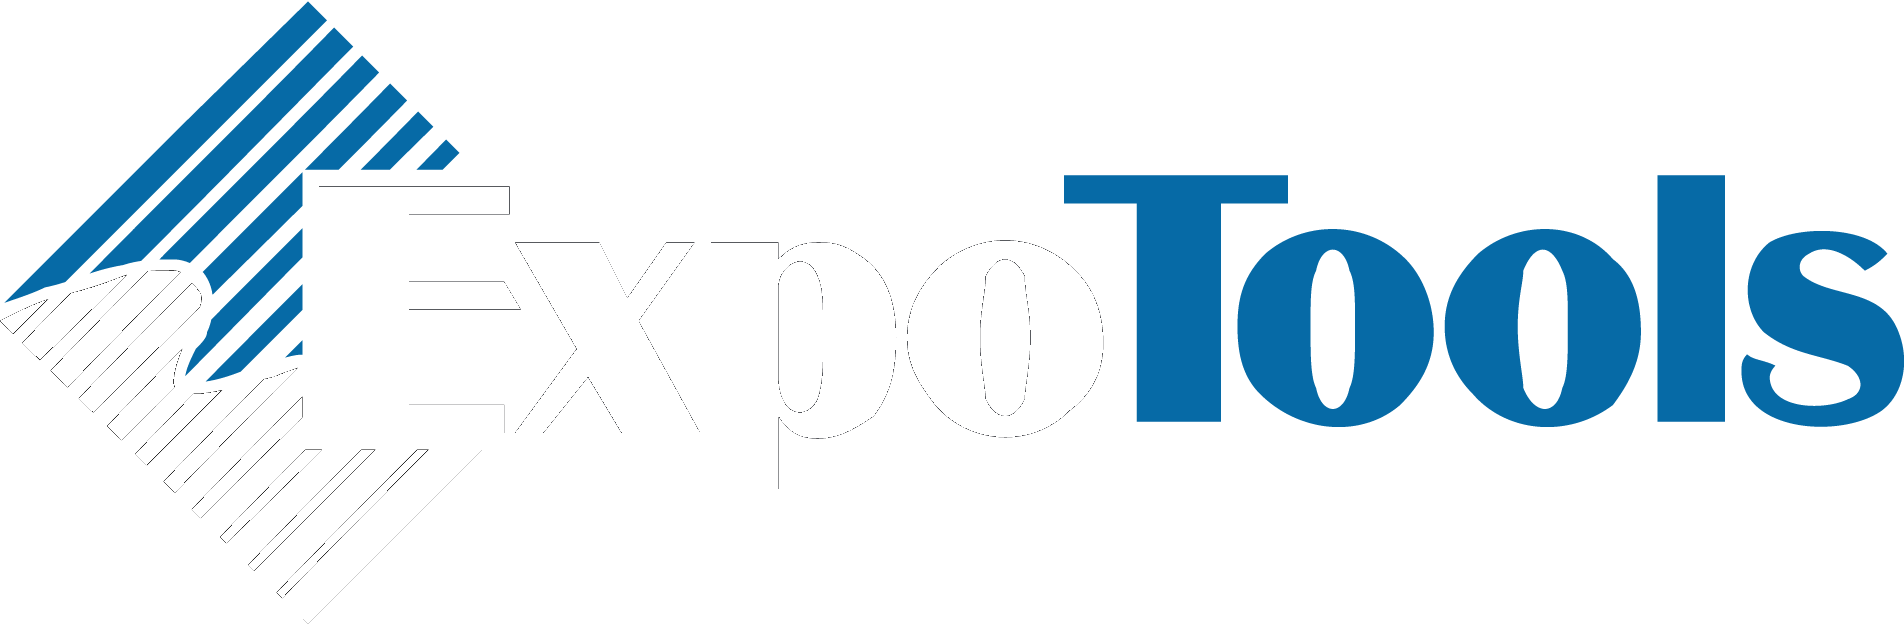 ExpoTools USA company logo